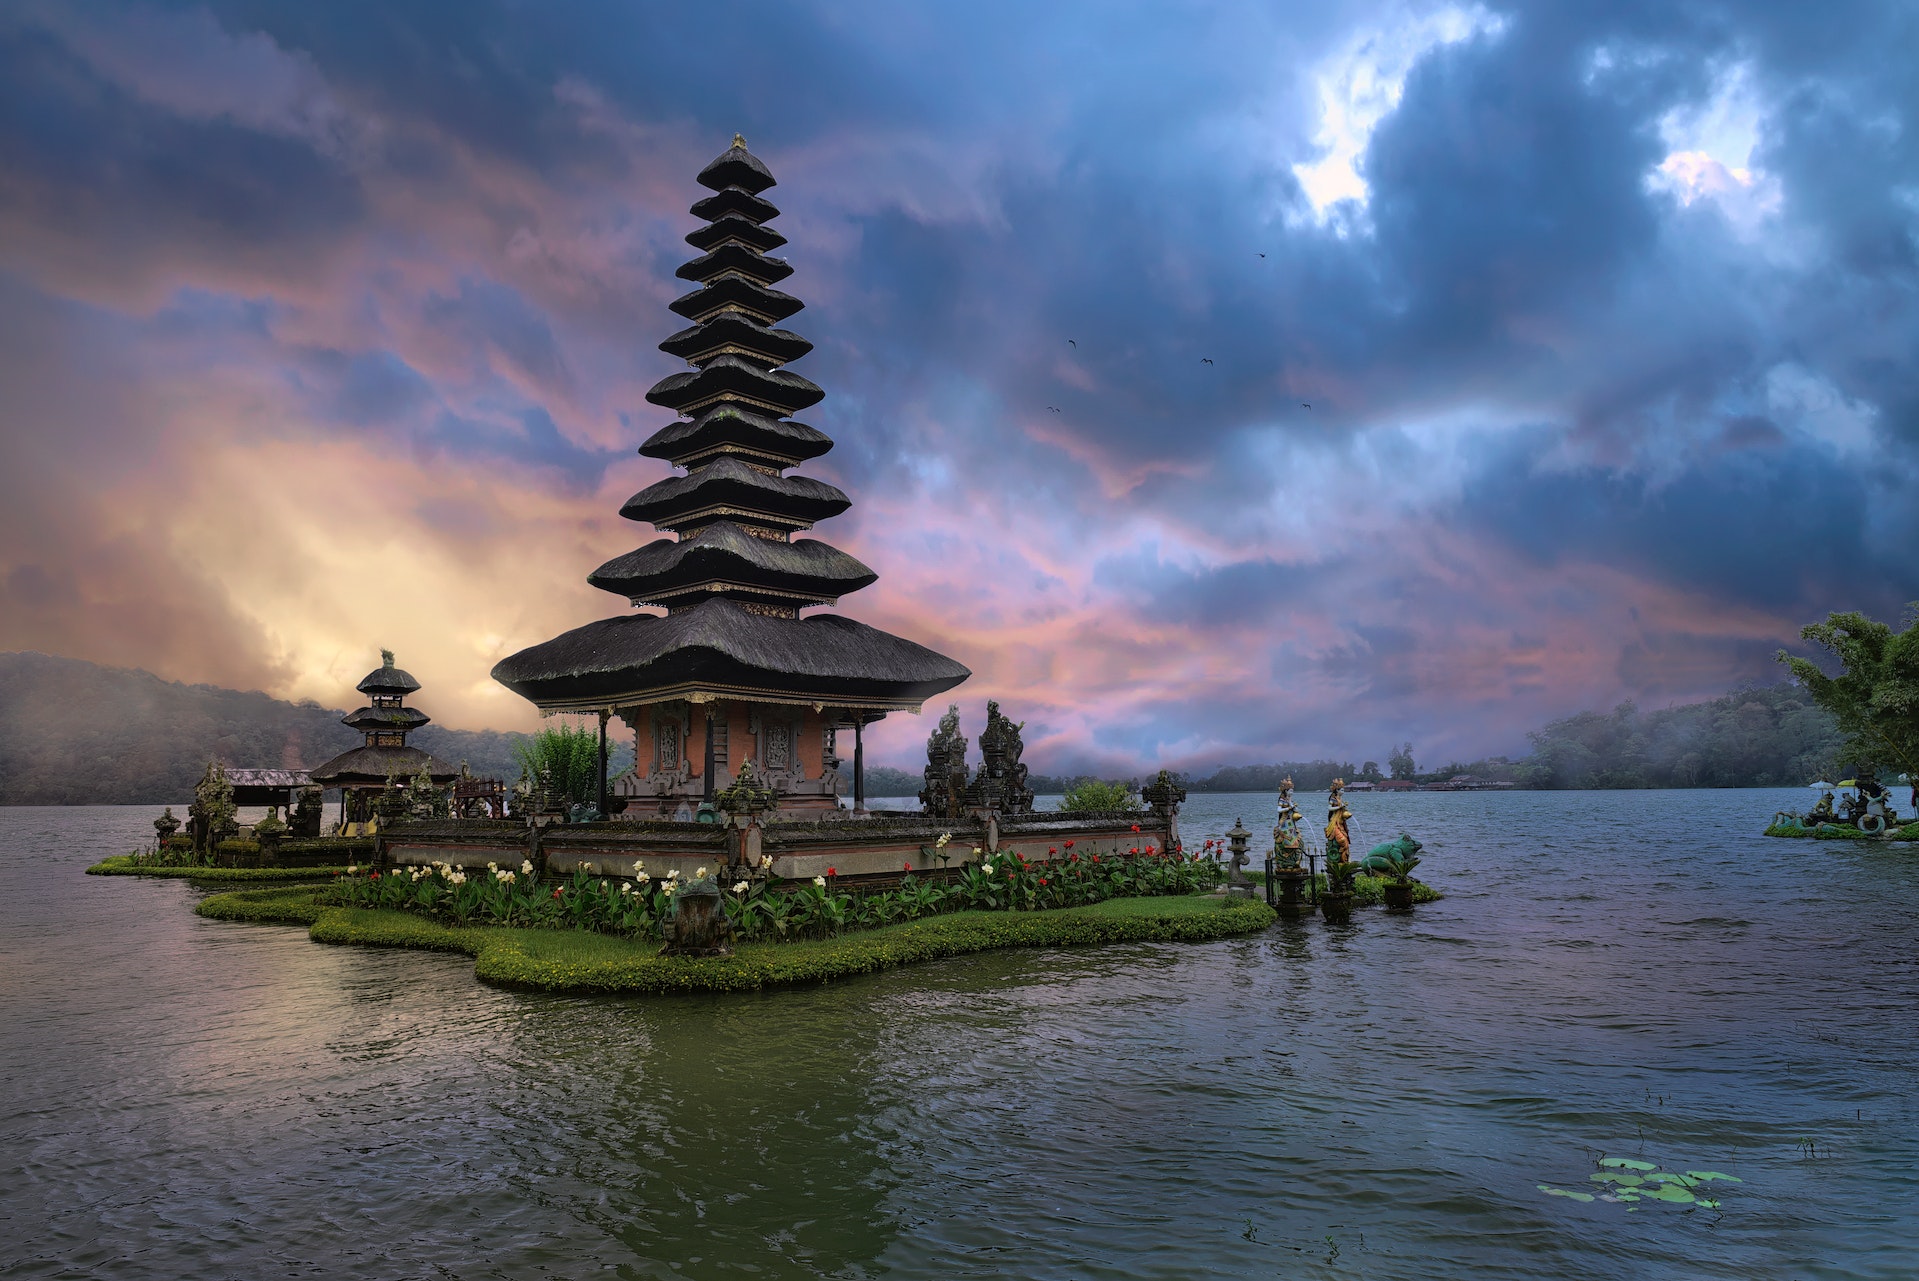 A Romantic Retreat: Spending a Week on Honeymoon in Bali